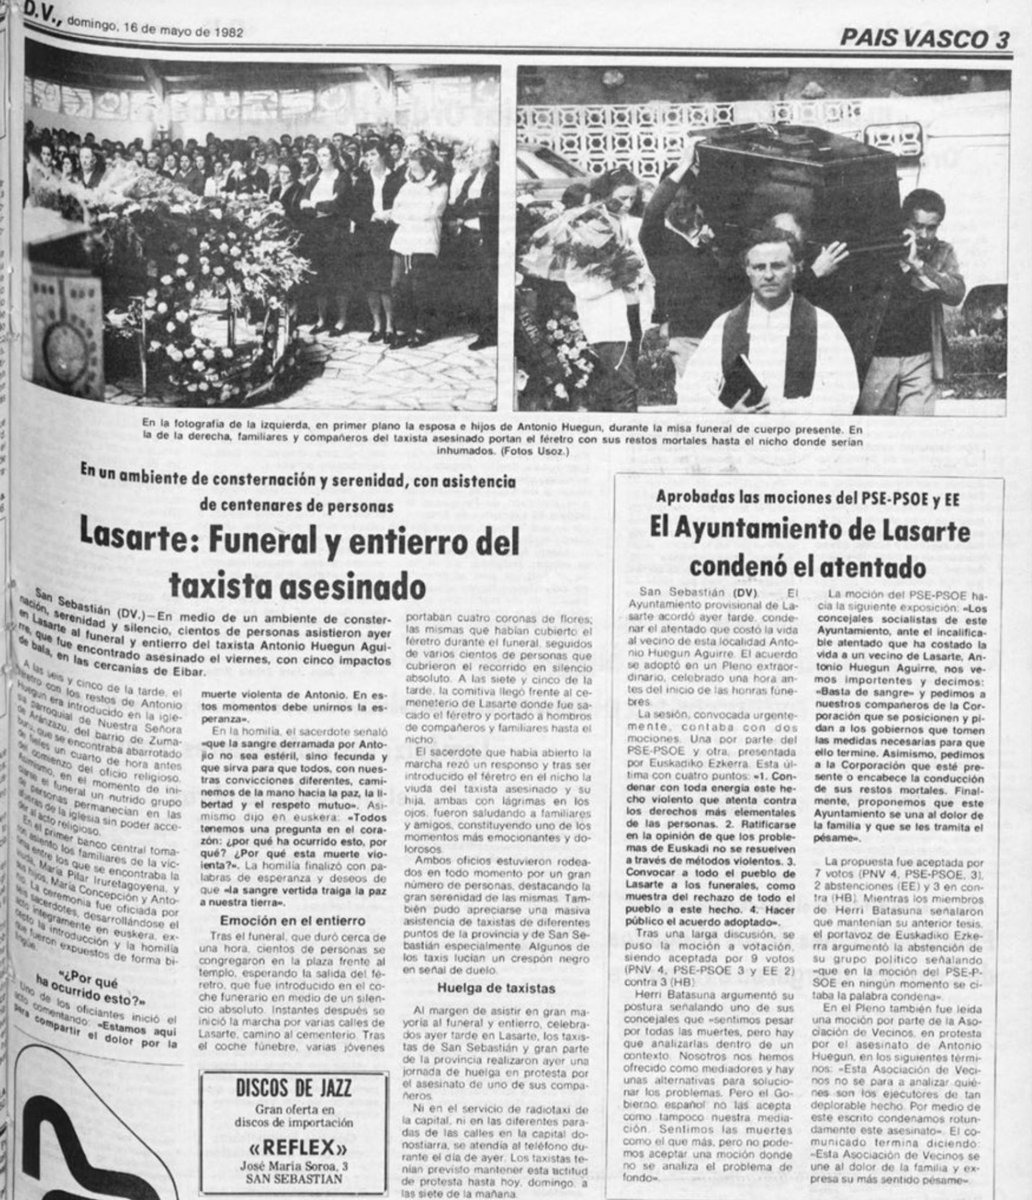 14/05/1982. Éibar. Se cumplen 42 años del asesinato por ETA-m del taxista ANTONIO HUEGUN AGUIRRE. Fue encontrado muerto en un camino contiguo a la autopista Bilbao-Behobia a la altura del Km-62, cerca de Éibar. La Policía determinó que había sido asesinado en el mismo lugar.